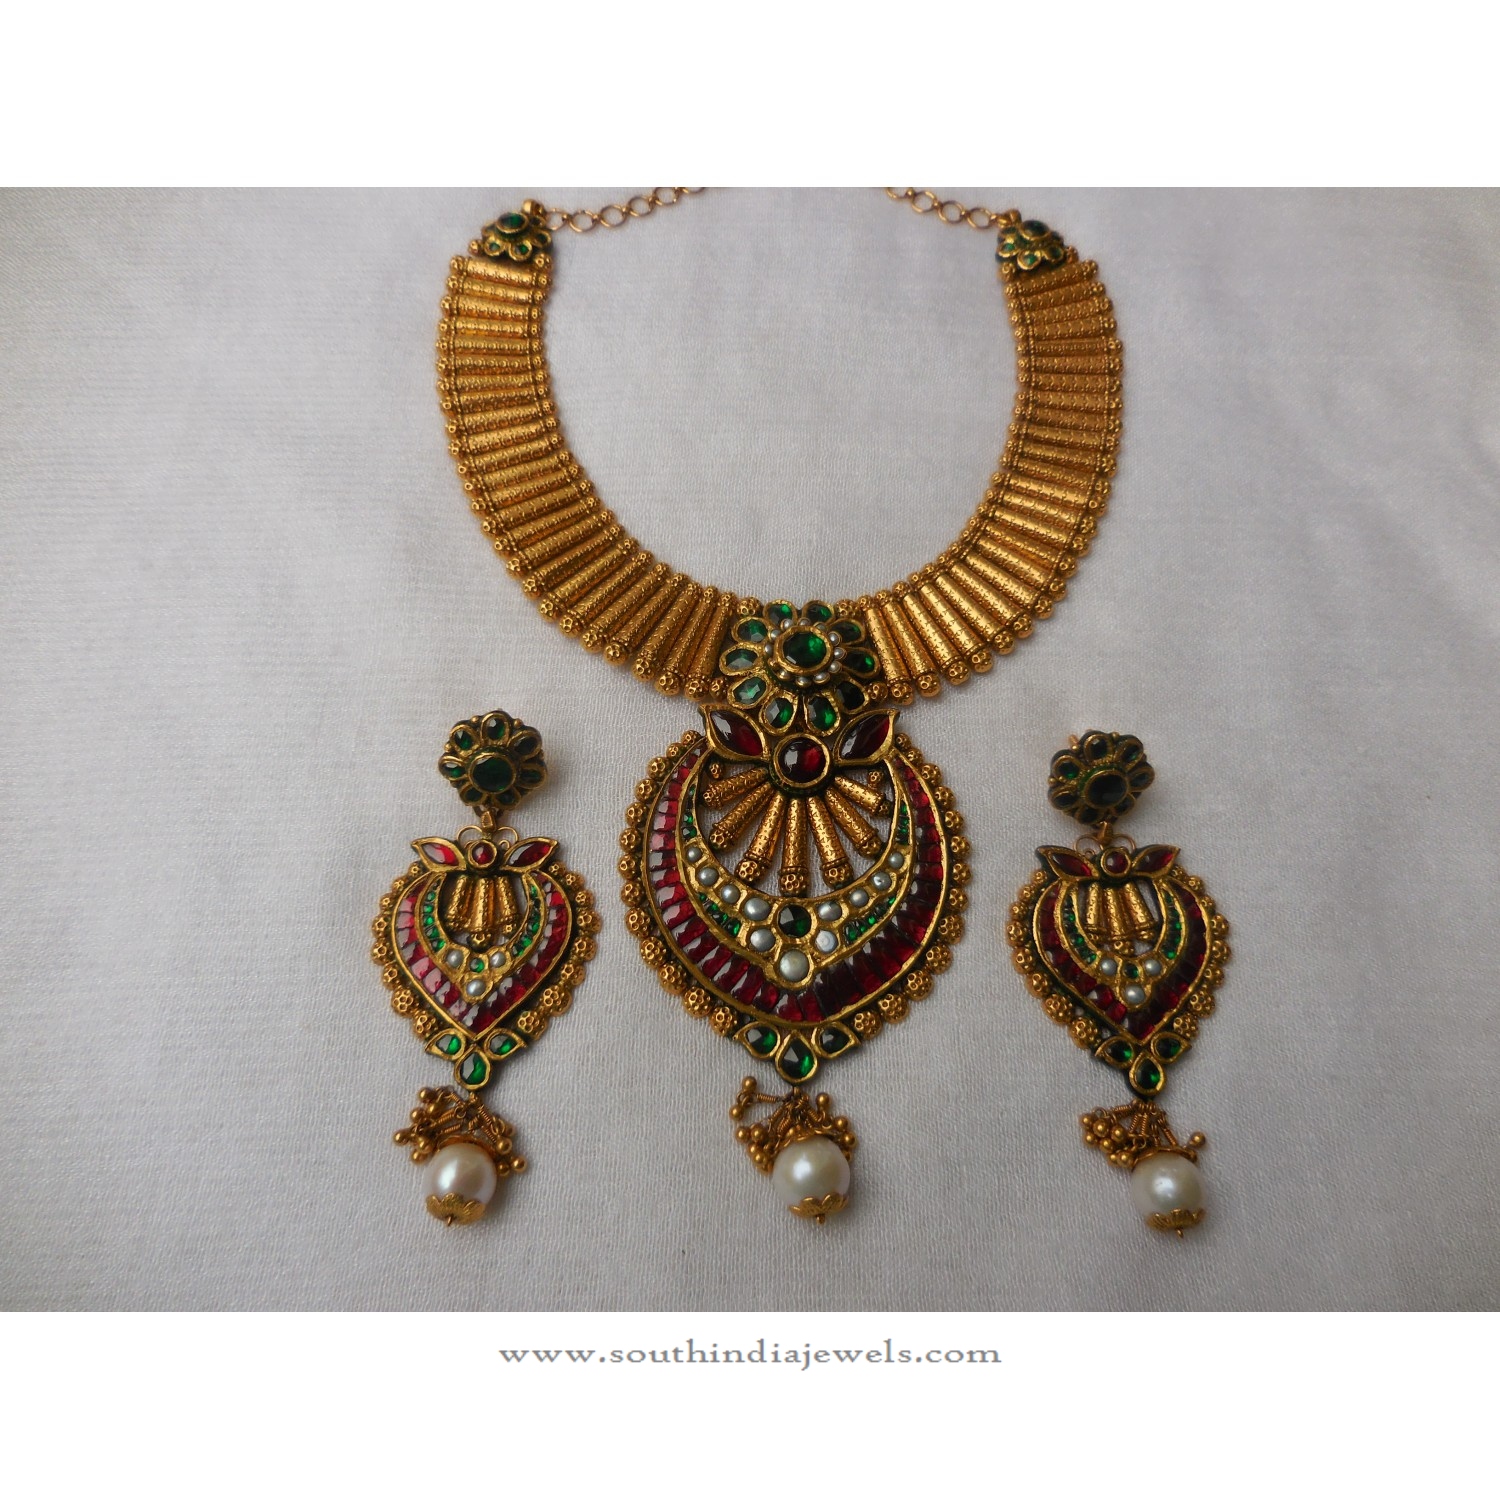 Designer Necklace with Earrings from Arnav